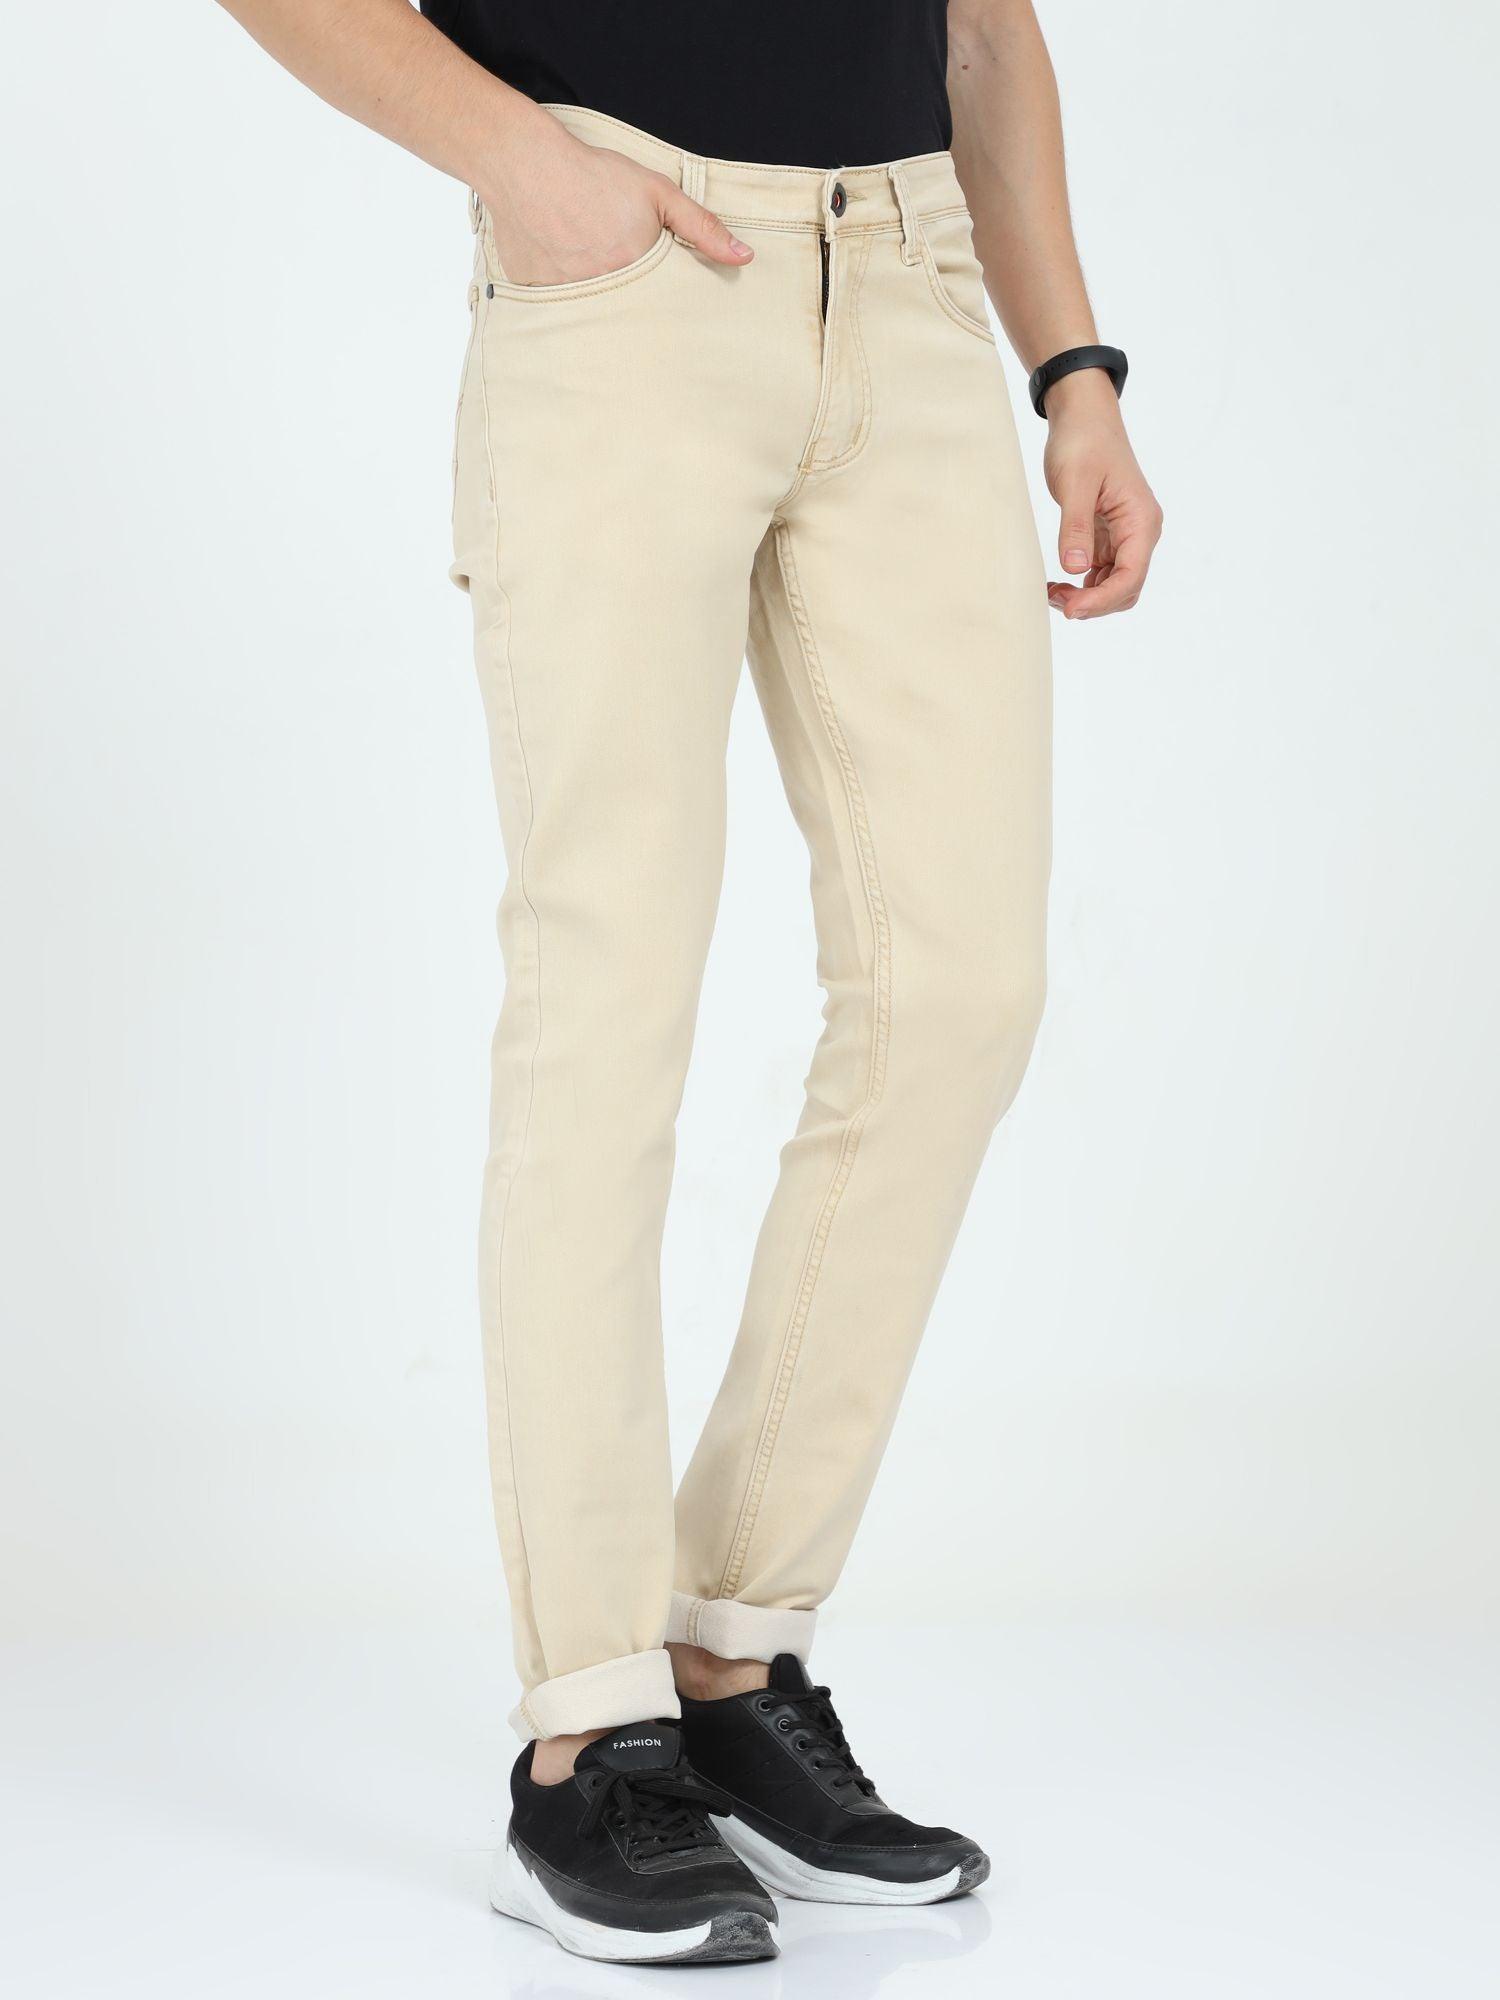 Men's Slim Fit Jeans - Biege